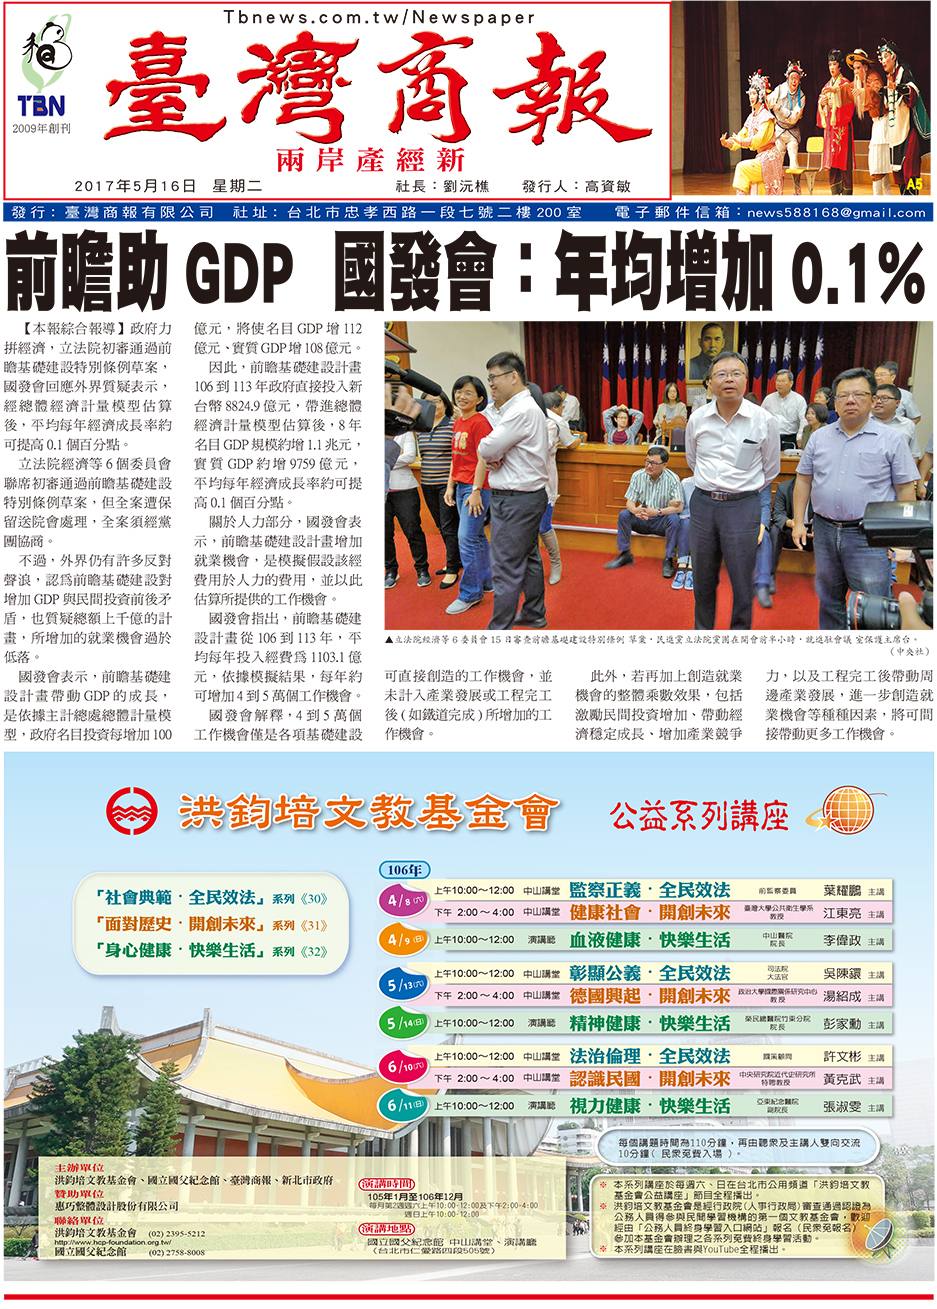 前瞻助 GDP 國發會:年均增加 0.1%